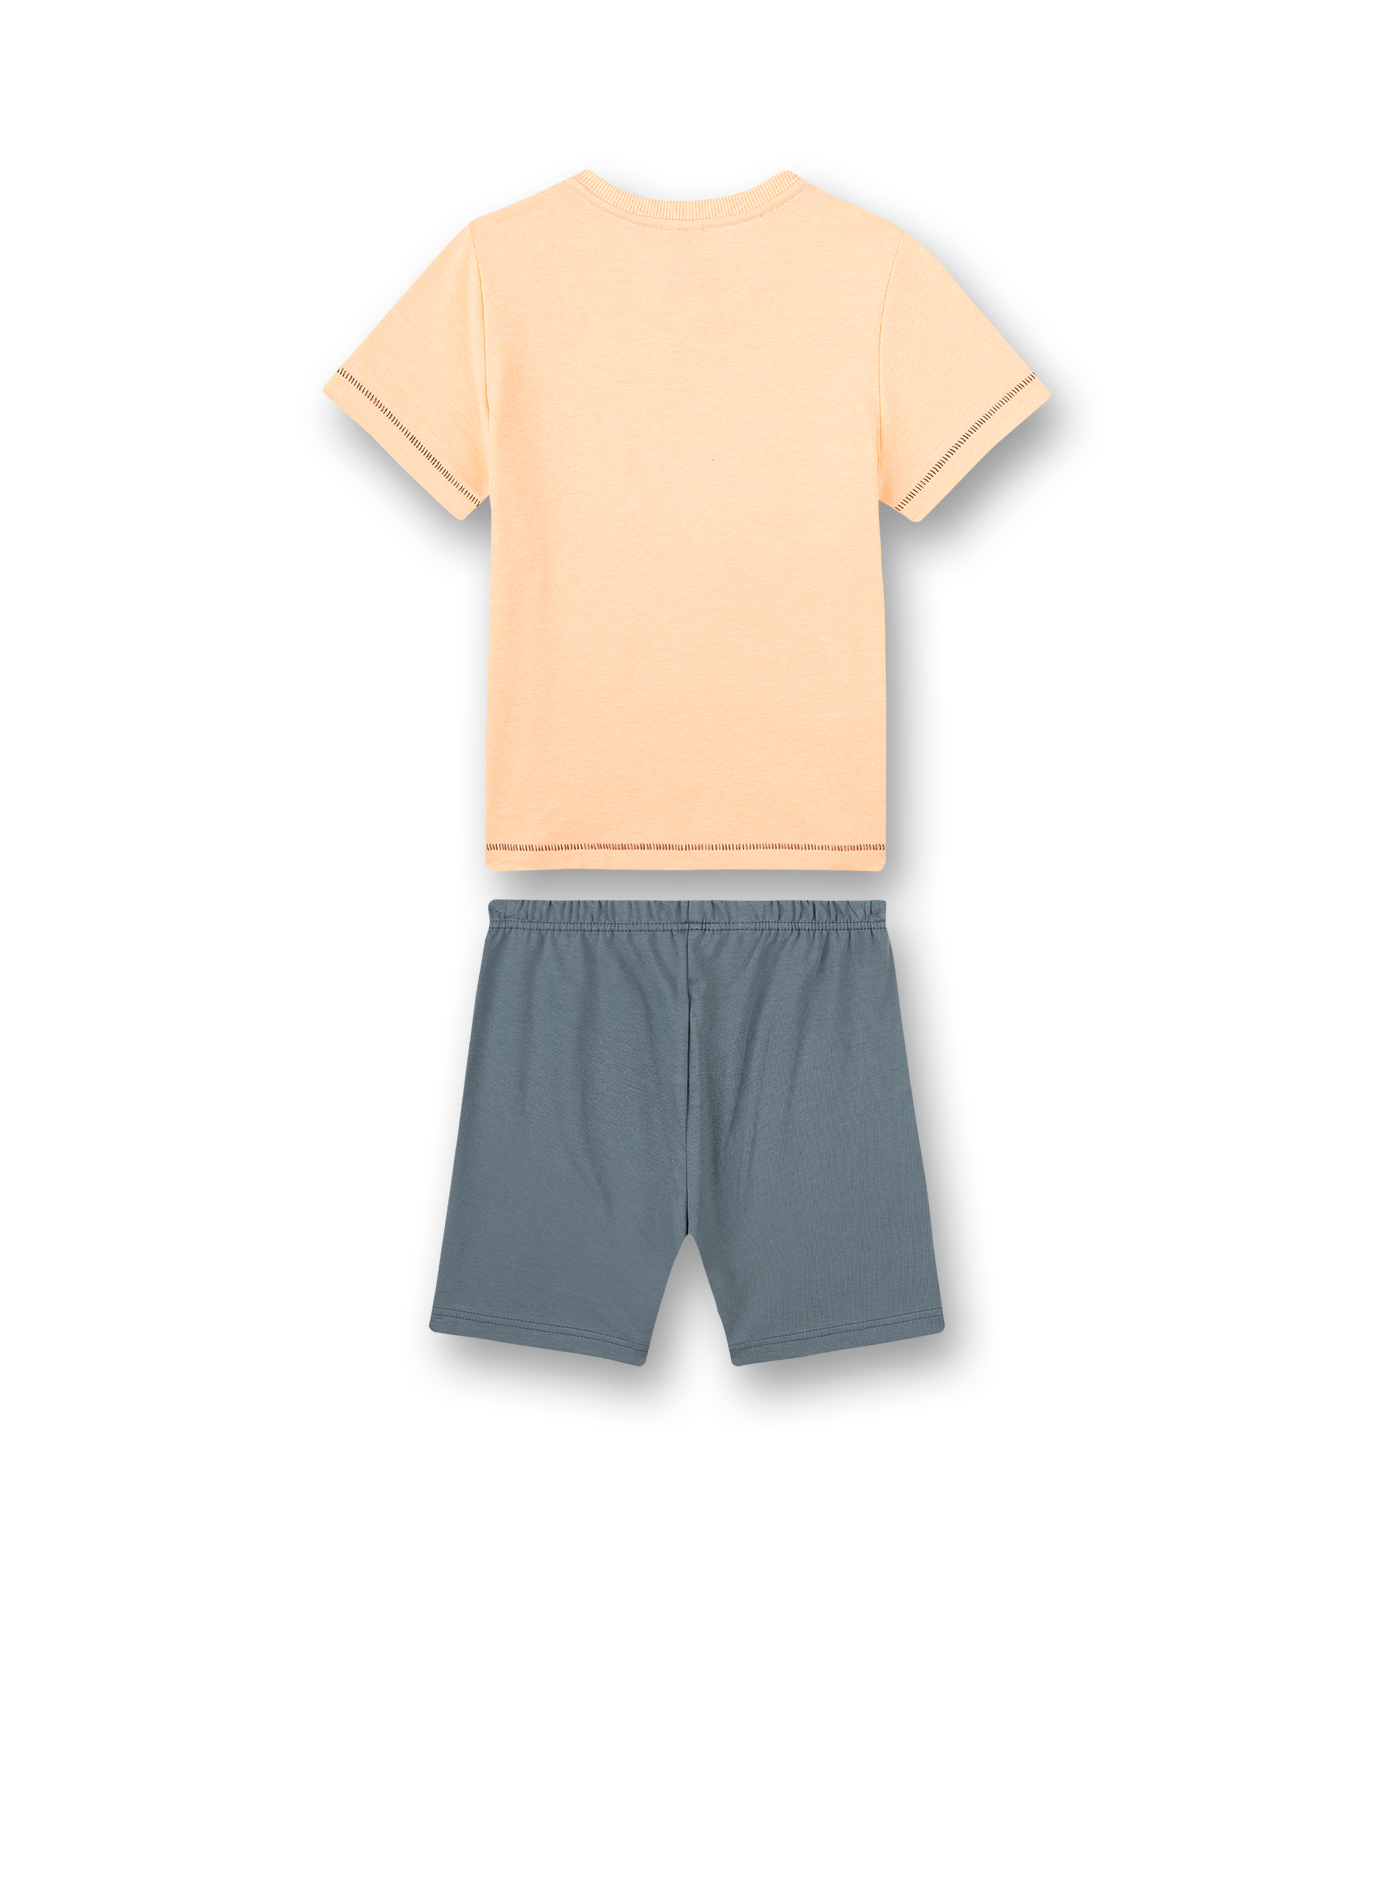 Jungen-Schlafanzug kurz Orange Wild at Heart